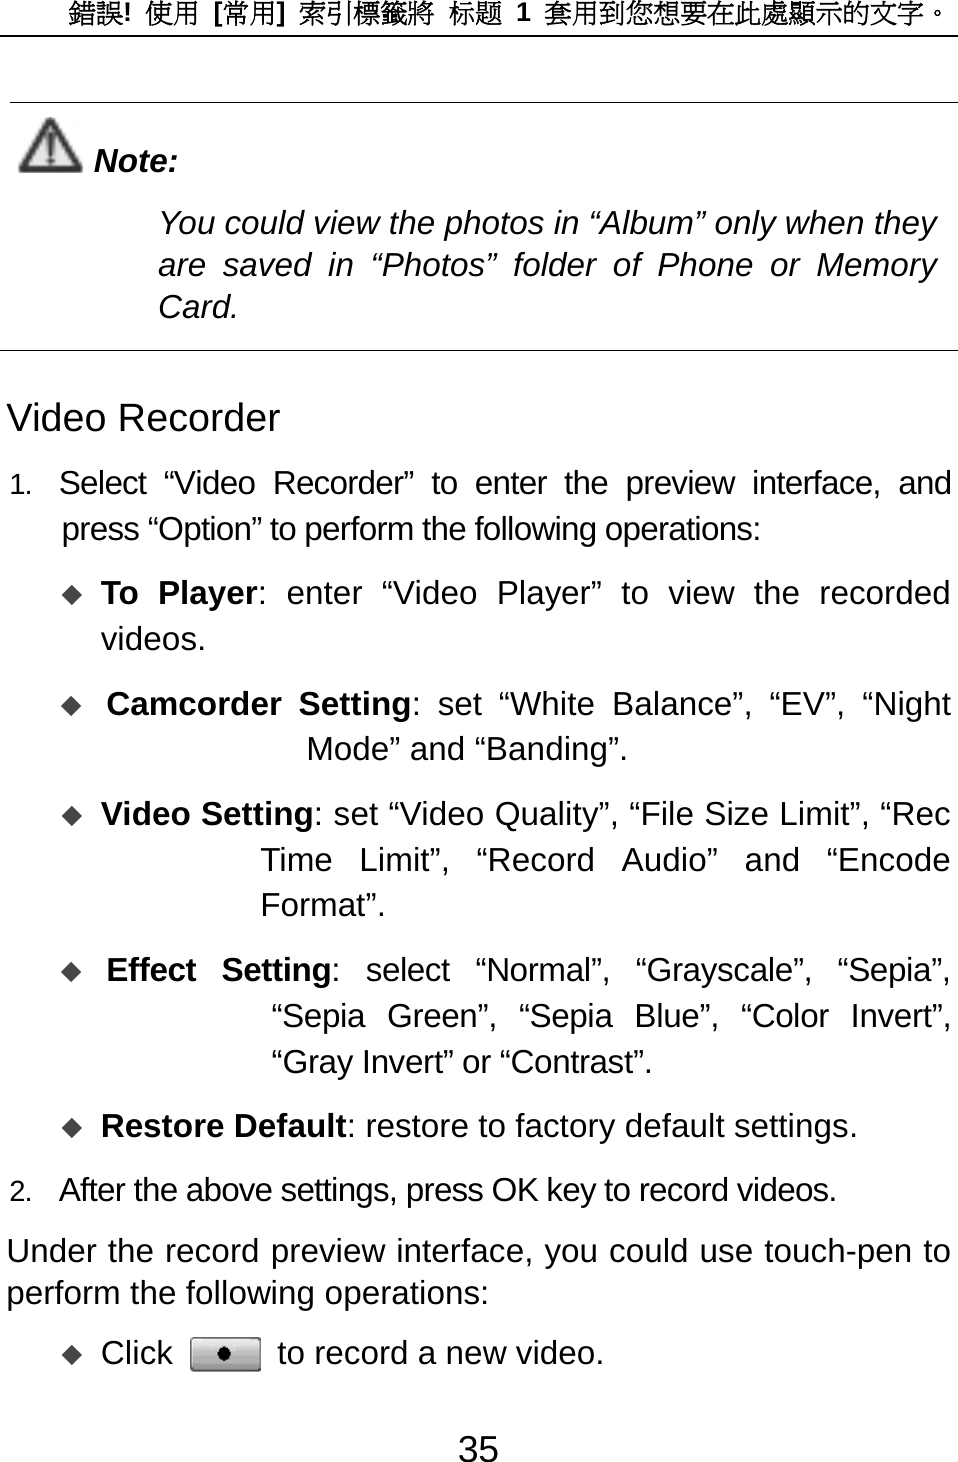 錯誤!  使用 [常用]  索引標籤將 标题 1 套用到您想要在此處顯示的文字。 35  Note: You could view the photos in “Album” only when they are saved in “Photos” folder of Phone or Memory Card.  Video Recorder 1.  Select “Video Recorder” to enter the preview interface, and press “Option” to perform the following operations:  To Player: enter “Video Player” to view the recorded videos.  Camcorder Setting: set “White Balance”, “EV”, “Night Mode” and “Banding”.  Video Setting: set “Video Quality”, “File Size Limit”, “Rec Time Limit”, “Record Audio” and “Encode Format”.   Effect Setting: select “Normal”, “Grayscale”, “Sepia”, “Sepia Green”, “Sepia Blue”, “Color Invert”, “Gray Invert” or “Contrast”.  Restore Default: restore to factory default settings. 2.  After the above settings, press OK key to record videos.   Under the record preview interface, you could use touch-pen to perform the following operations:    Click  to record a new video. 